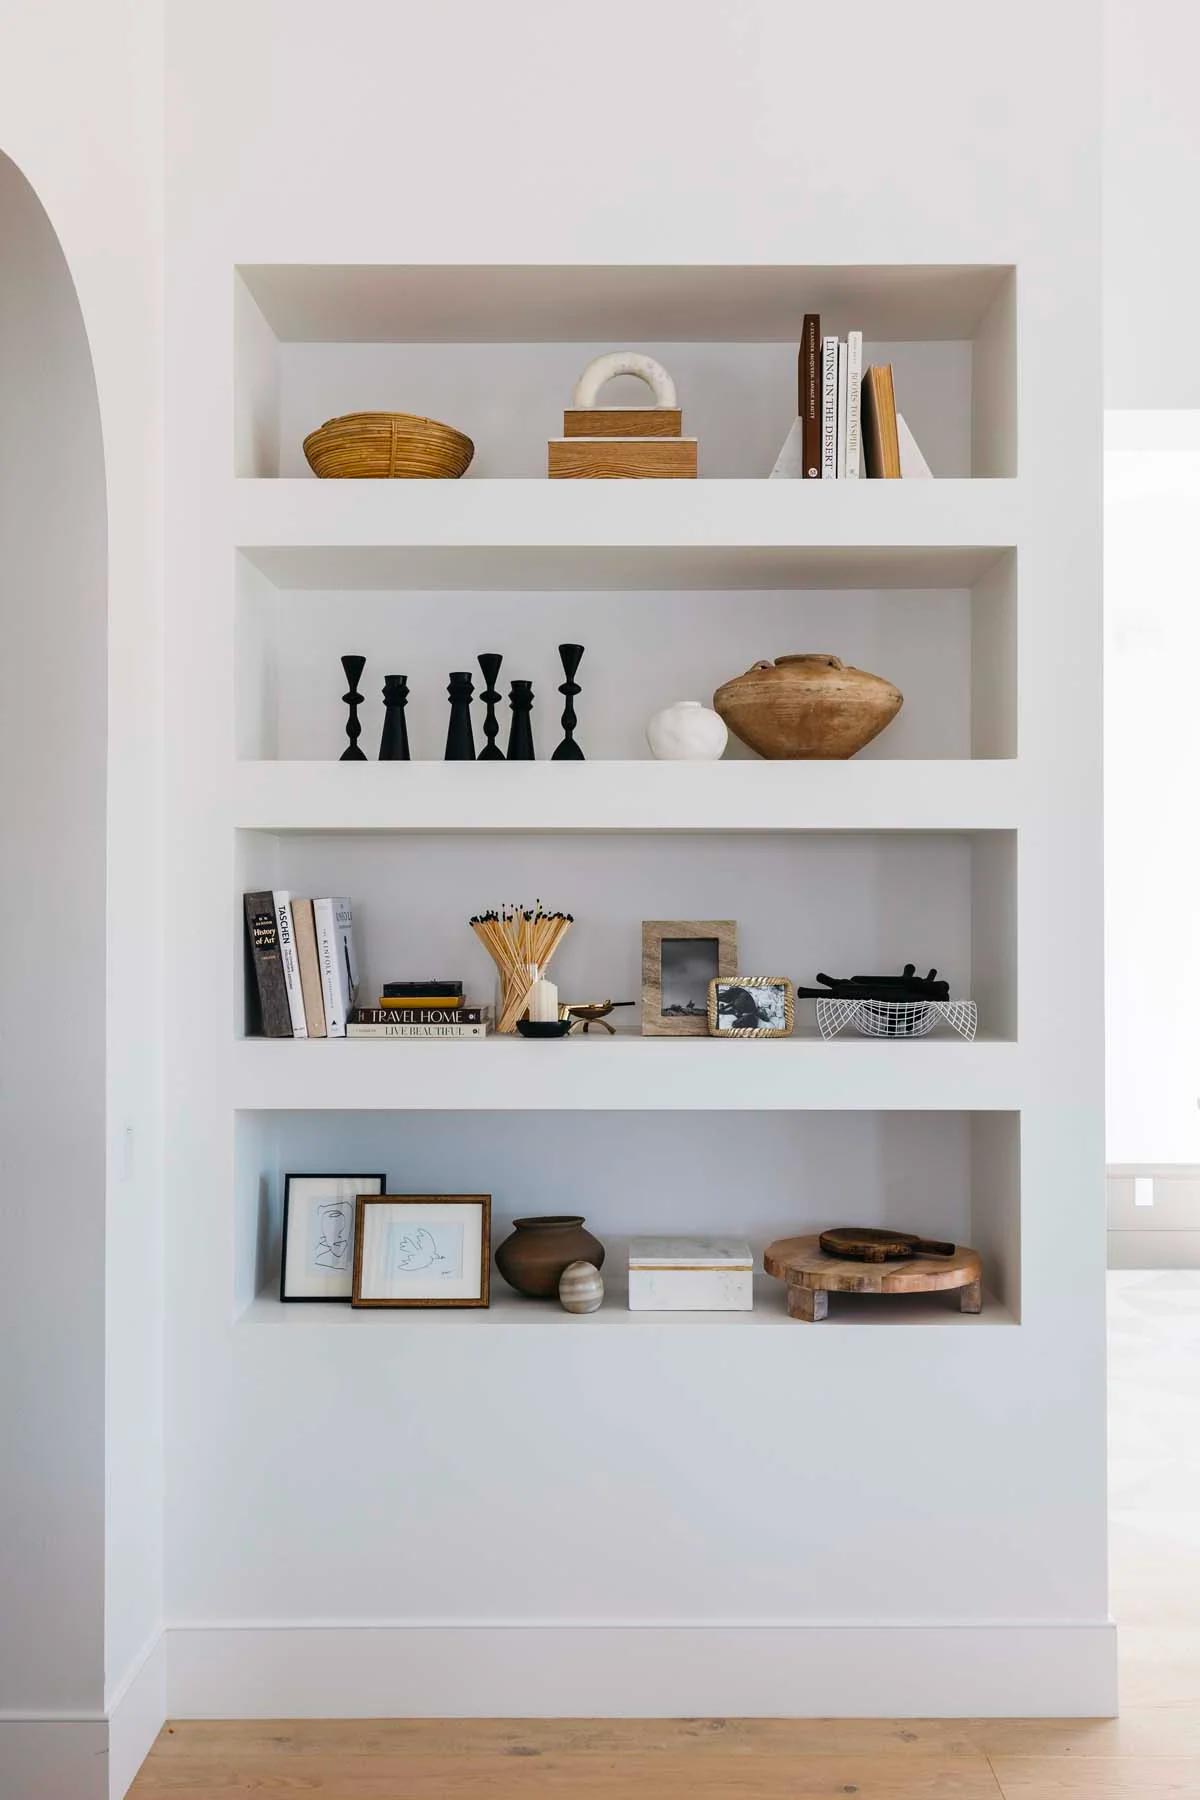 Een boekenkast met meerdere nissen boven elkaar in de muur | Bron: Thelifestyledco.com